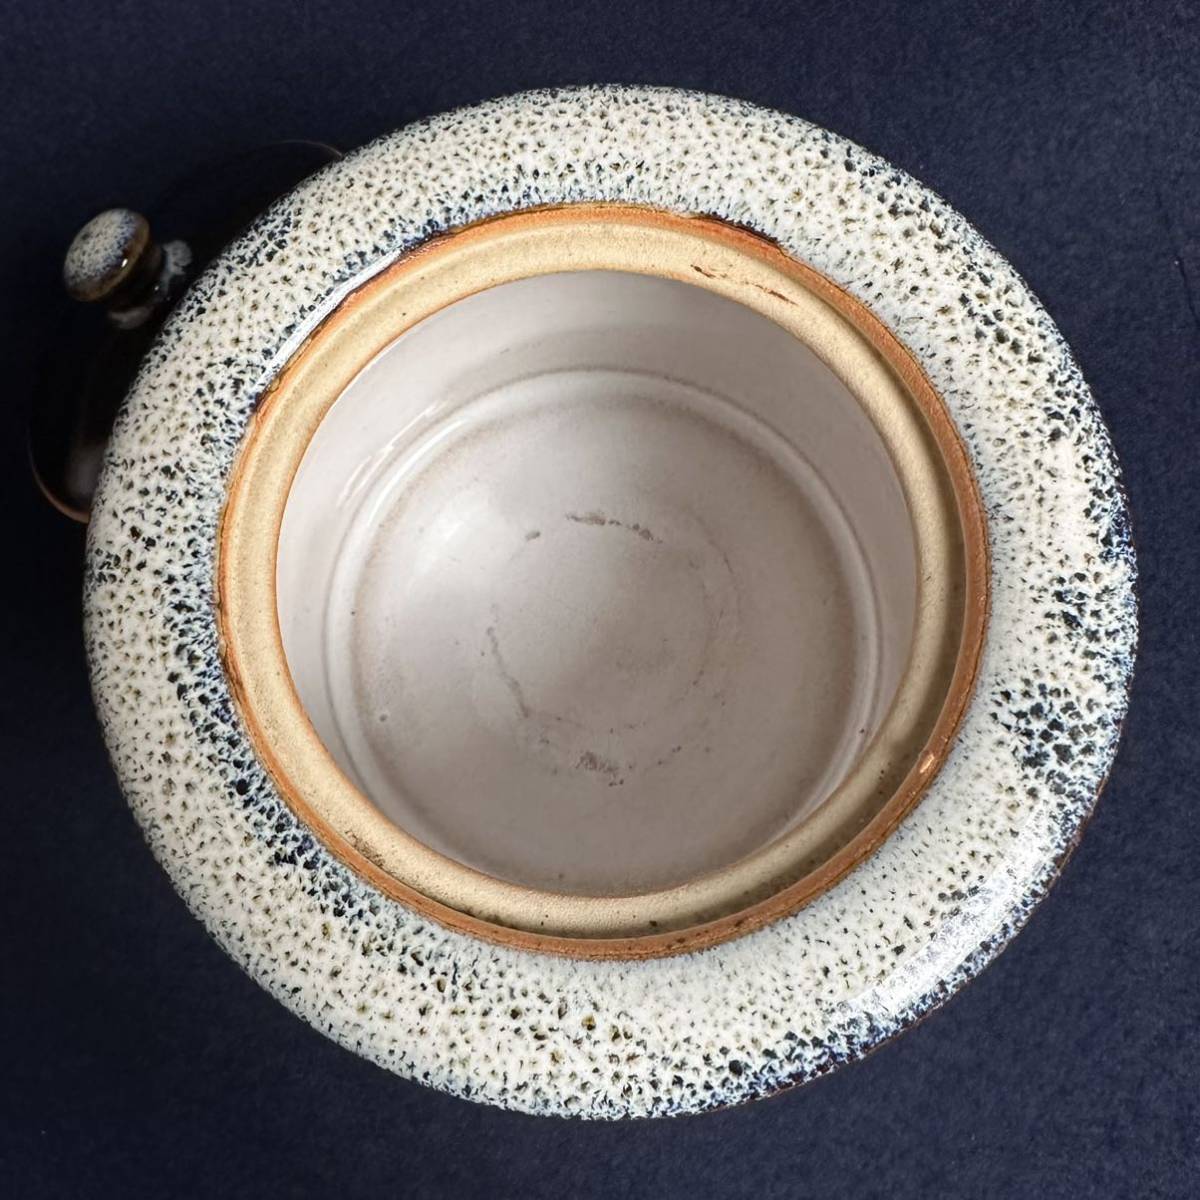 [SX925] 海鼠釉 菓子器 菓子鉢 蓋物 茶道具 盛鉢 飾り鉢 小物入れ 骨董 陶器の画像6